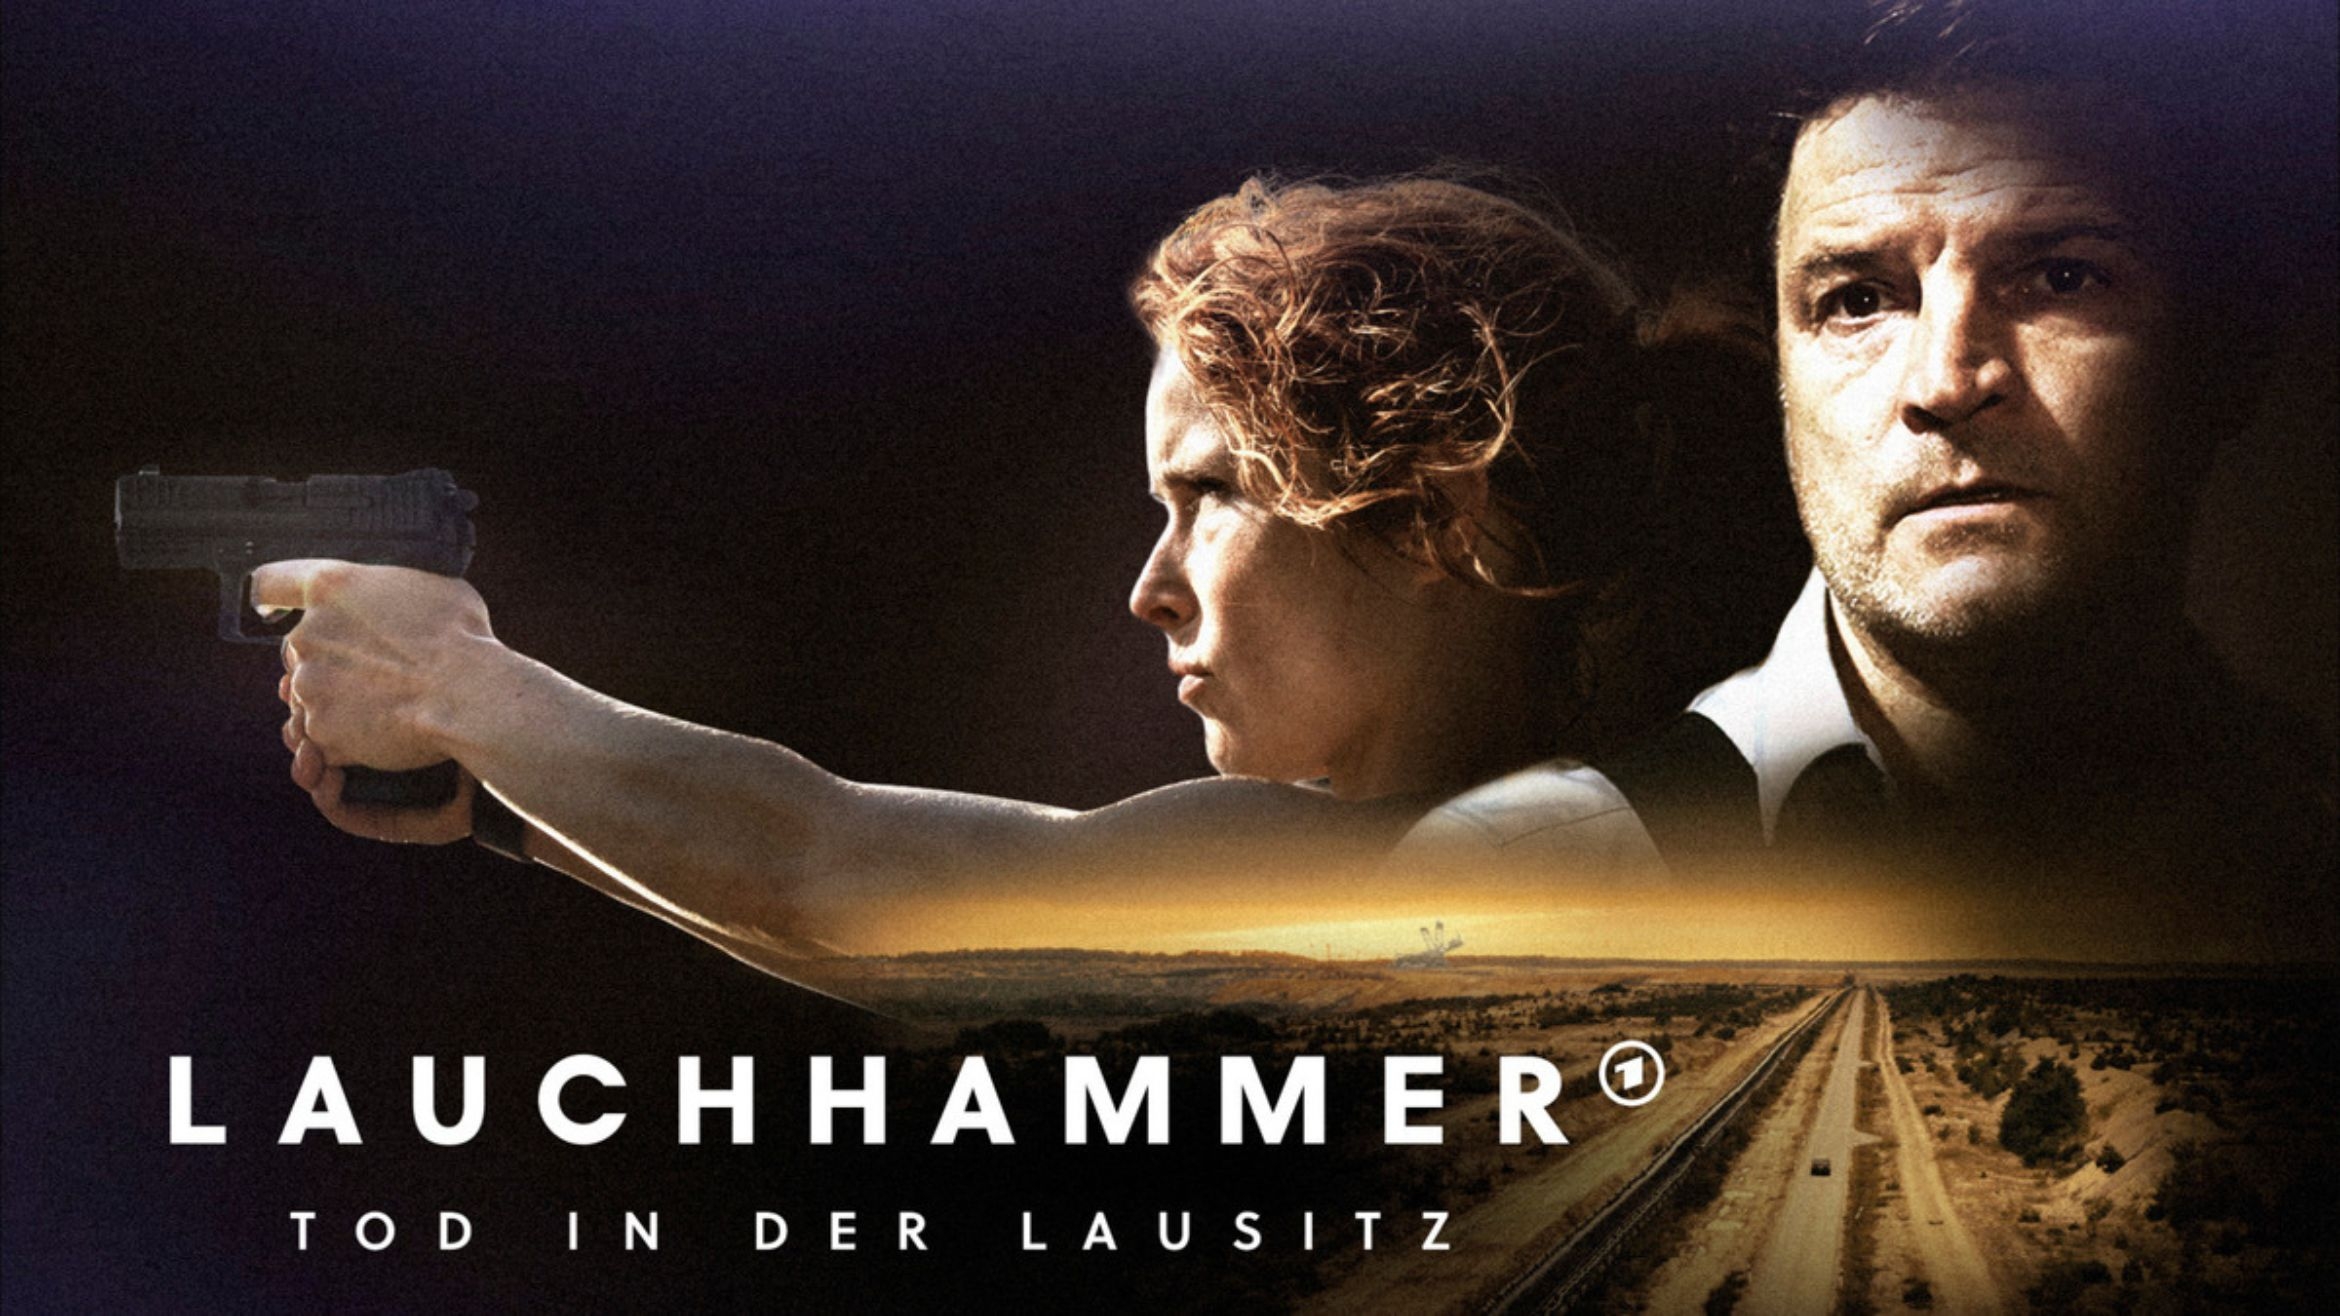 Die Drama-Reihe: Lauchhammer – Tod in der Lausitz" startete am 28. September im Ersten –